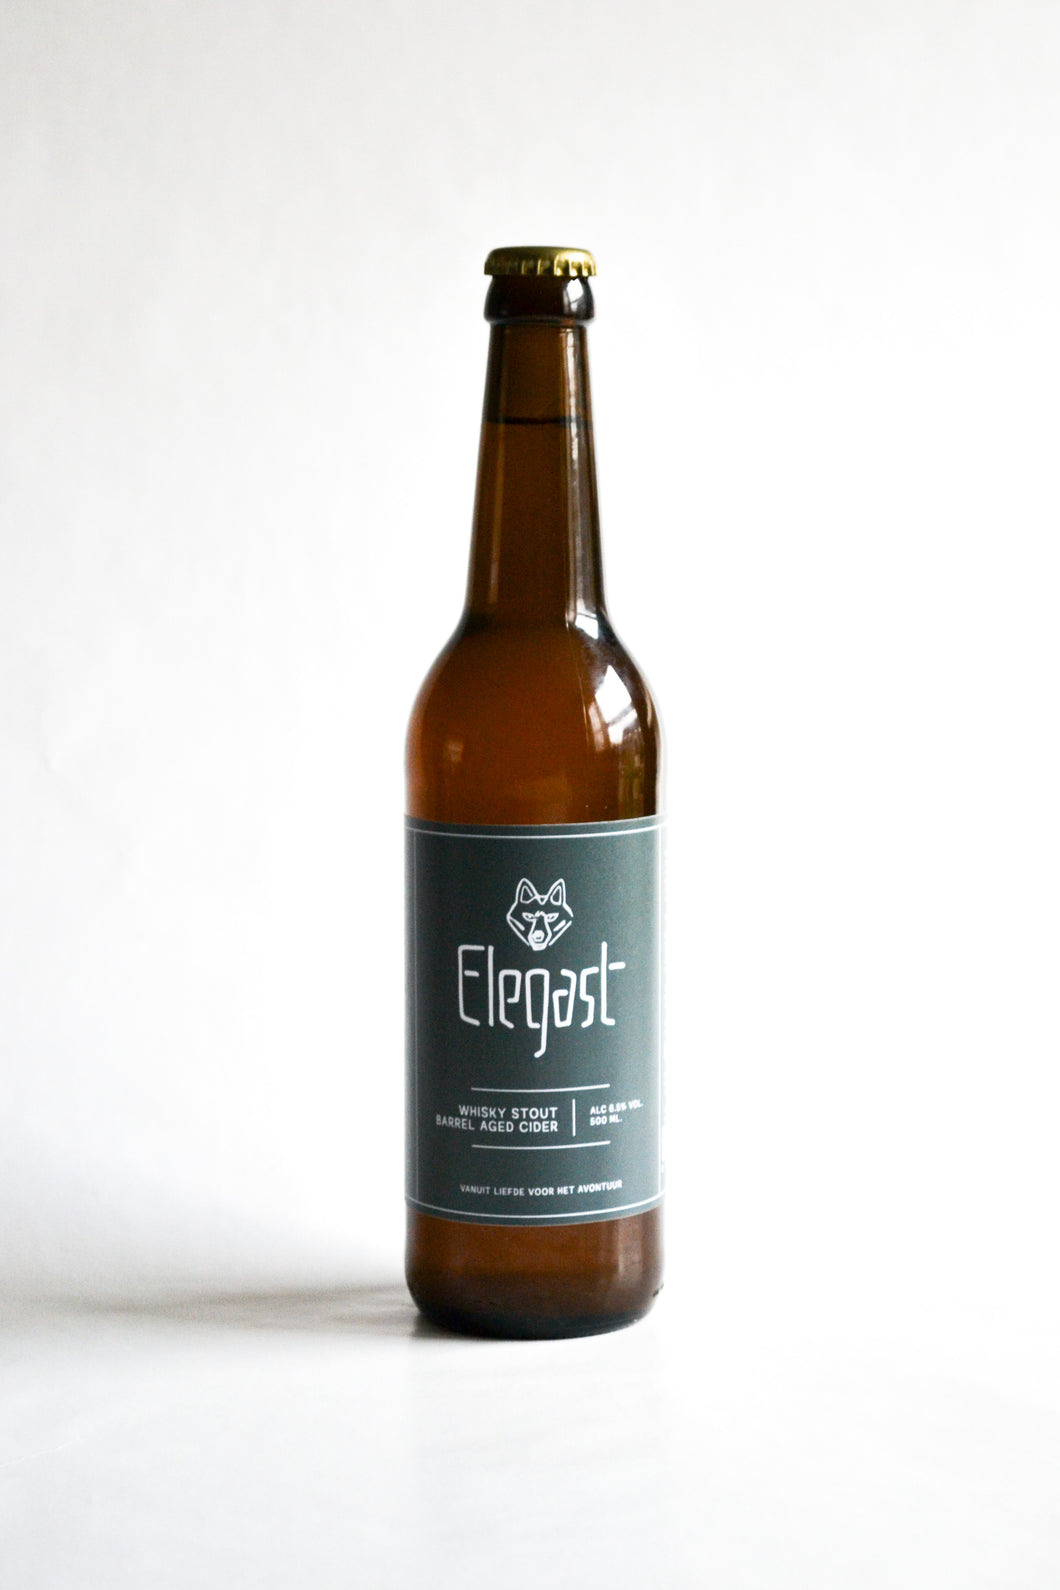 Elegast - Whisky Stout Barrel Aged Cider